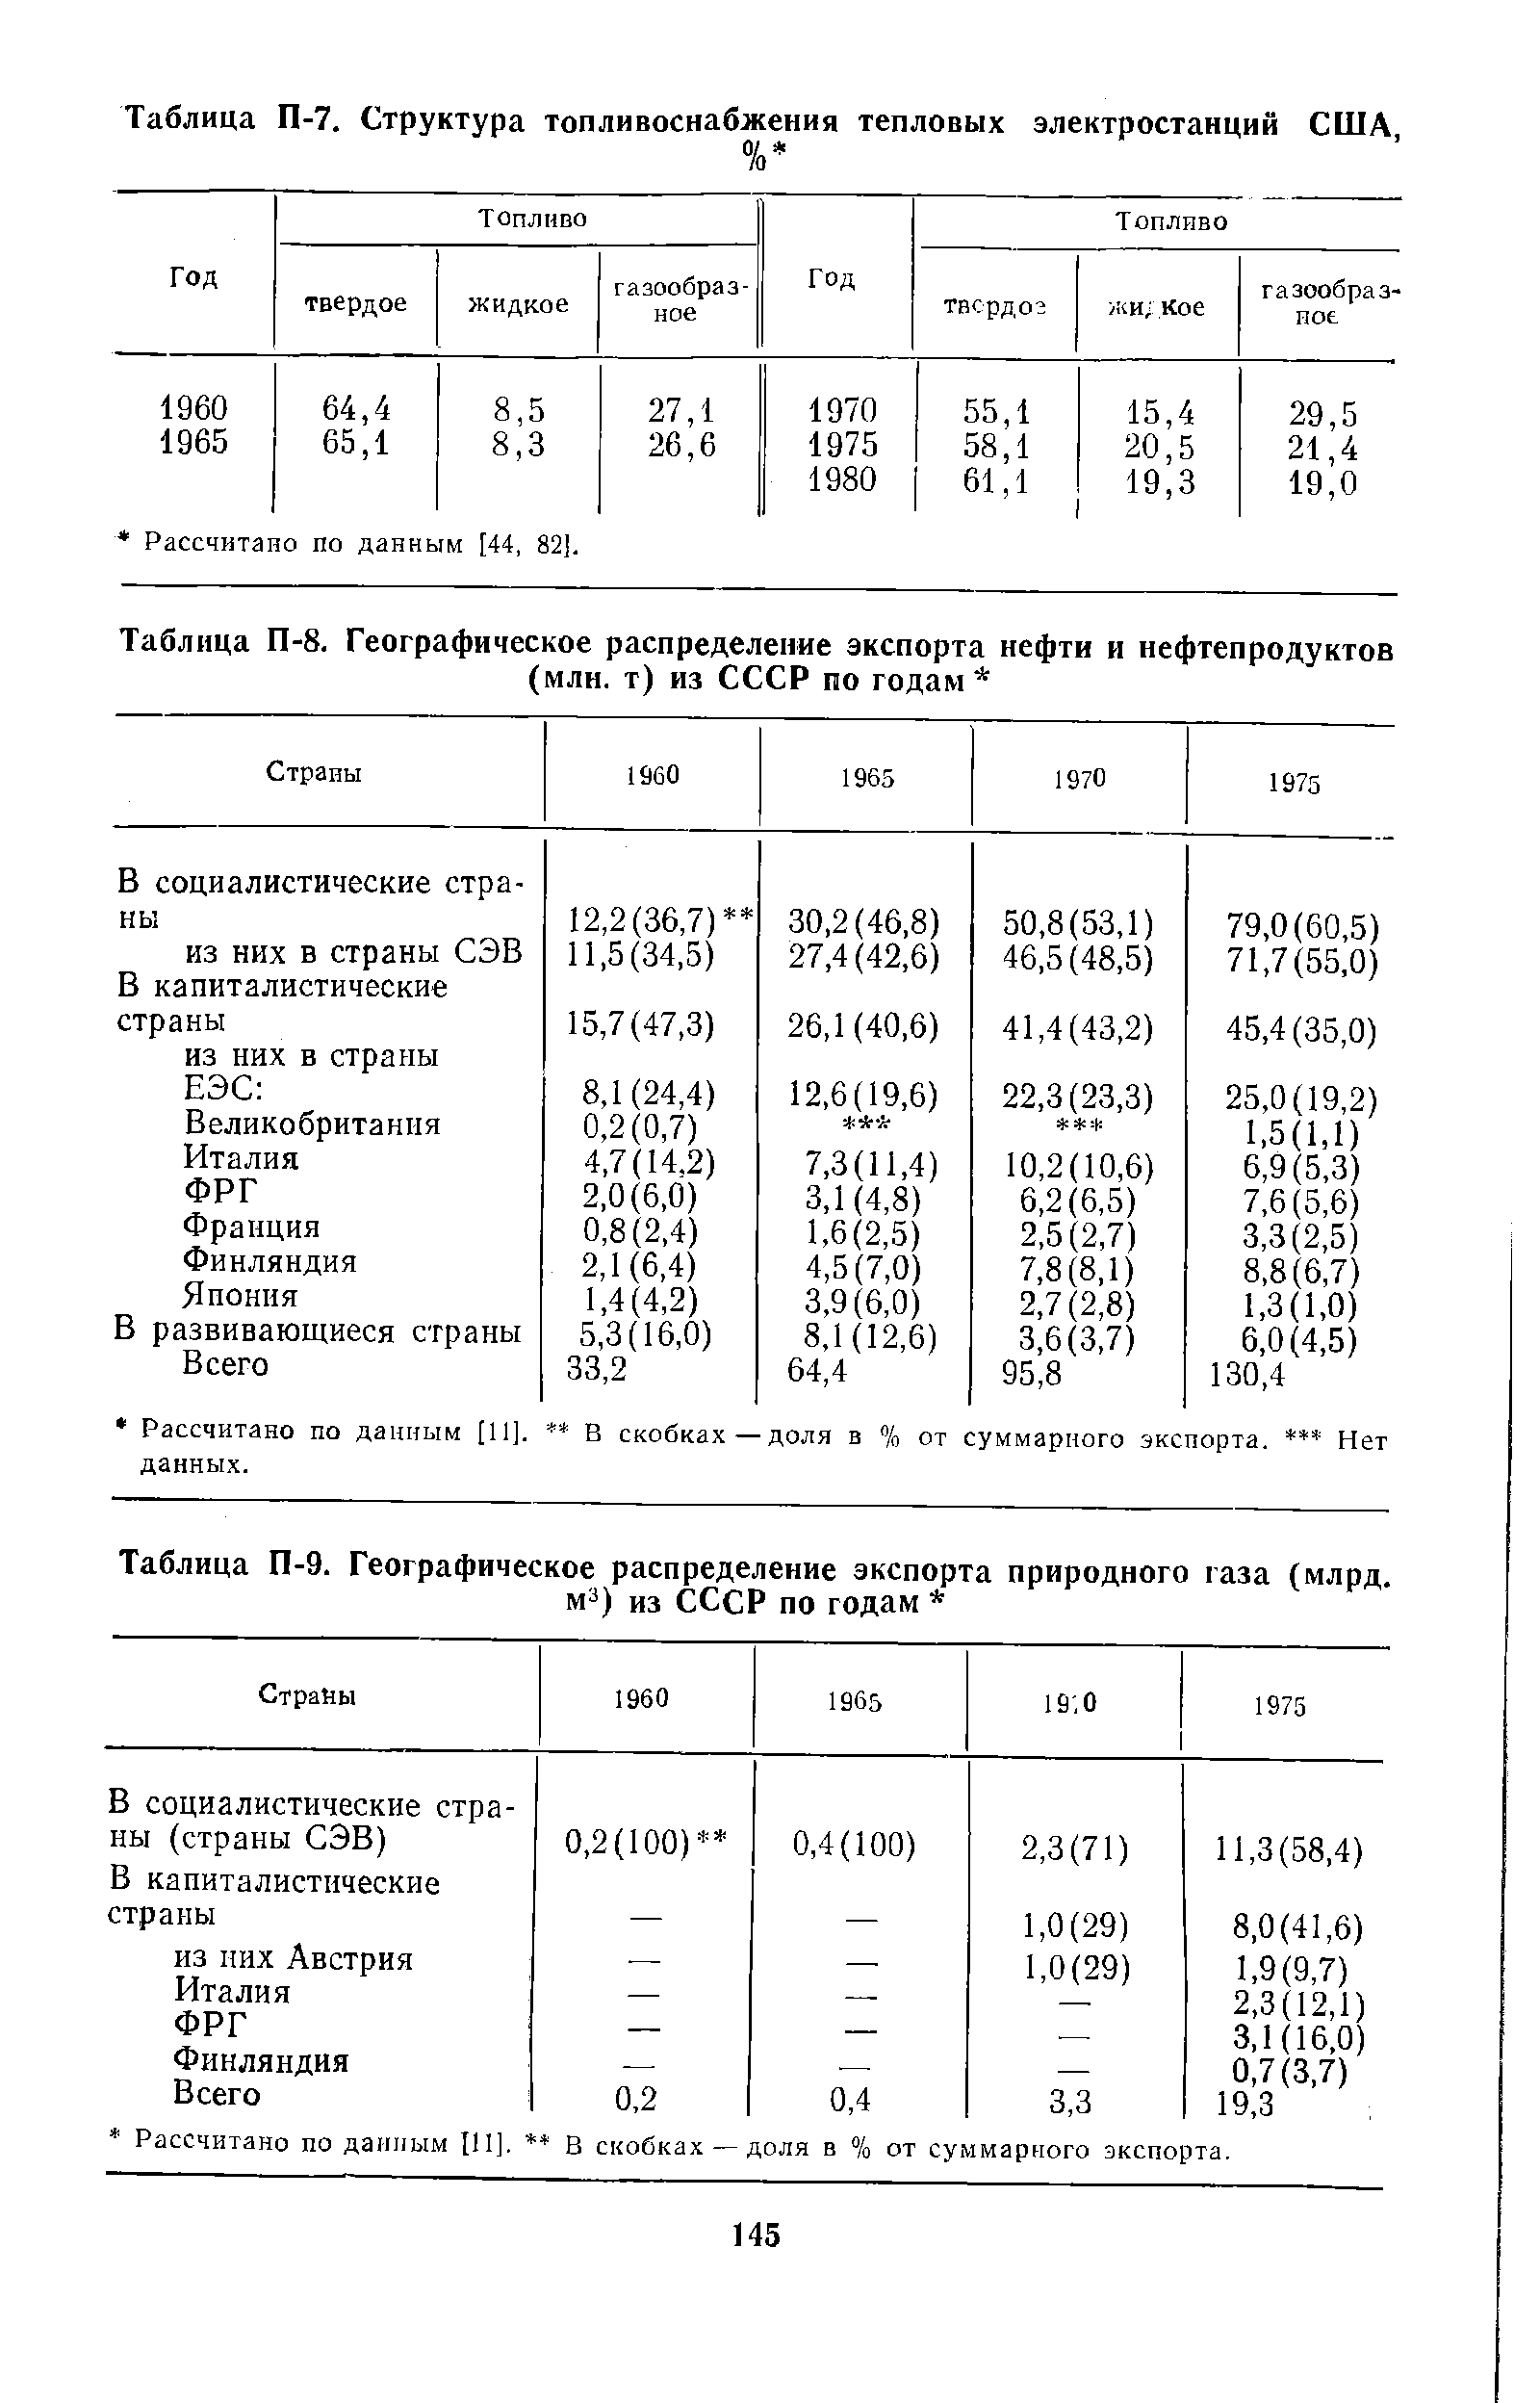 Таблица П-7. Структура топливоснабжения тепловых электростанций США,
